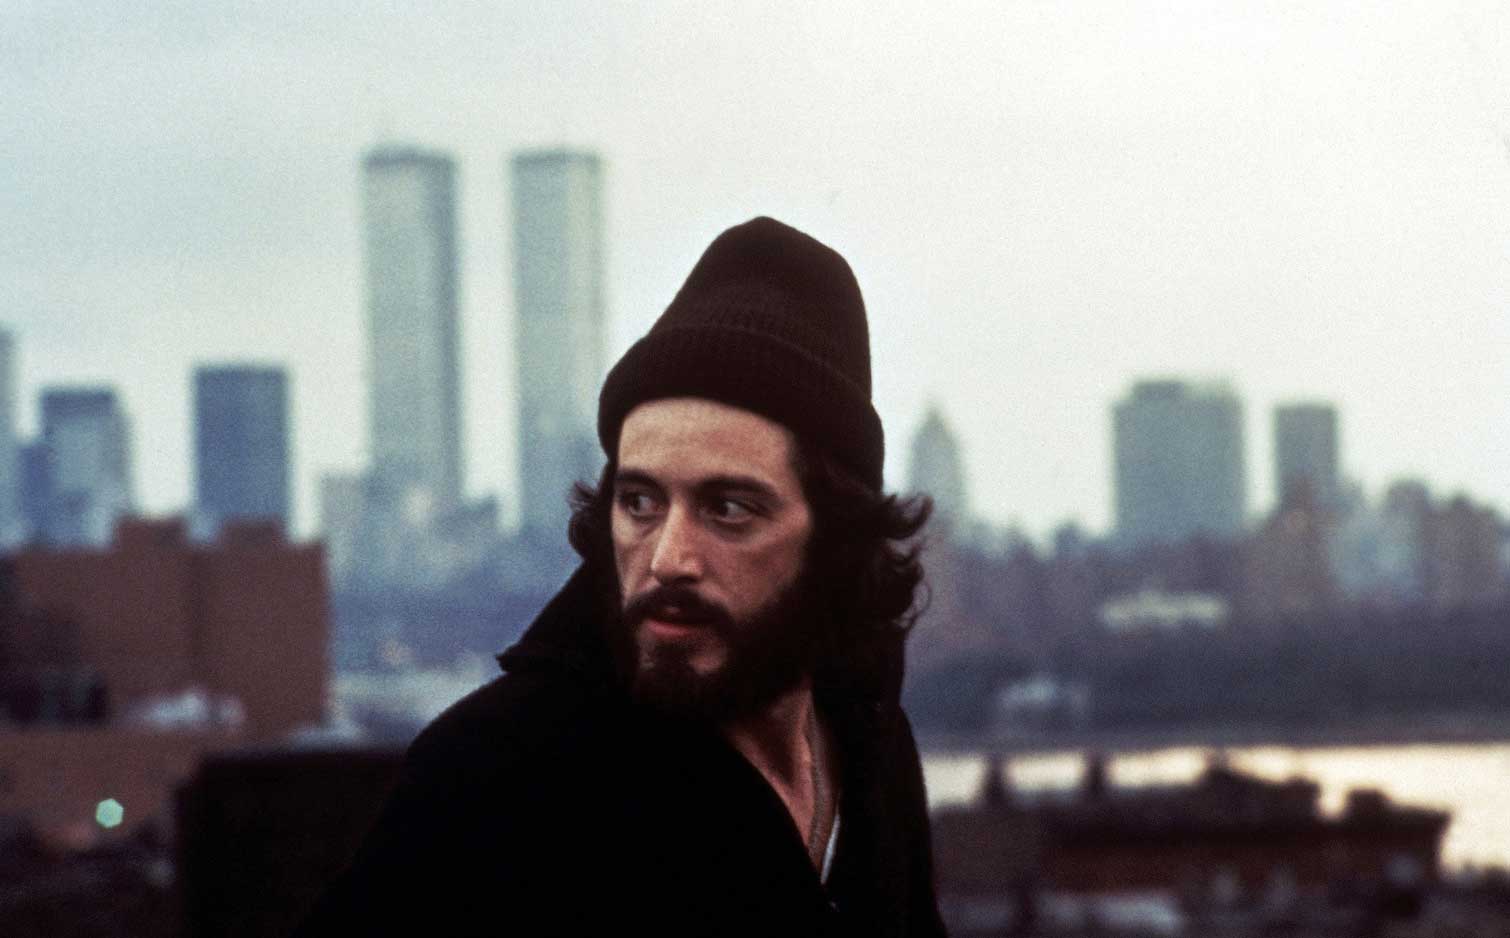 Al Pacino in a still from the 1973 Sidney Lumet film "Serpico"